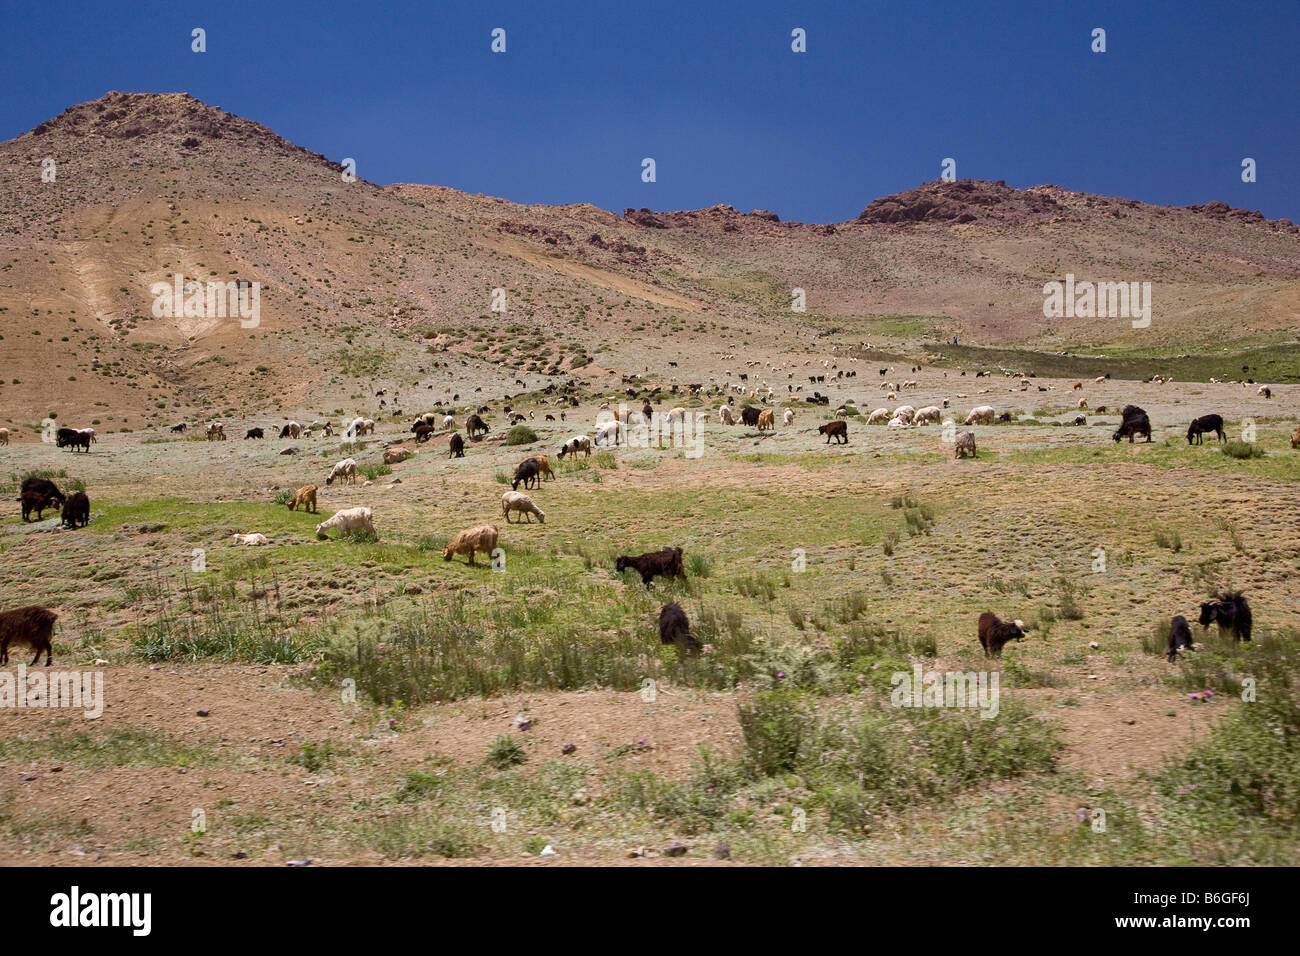 Le bétail broute dans un champ ouvert le long du Tizi n Tichka à travers les montagnes du Haut Atlas du Maroc. Banque D'Images